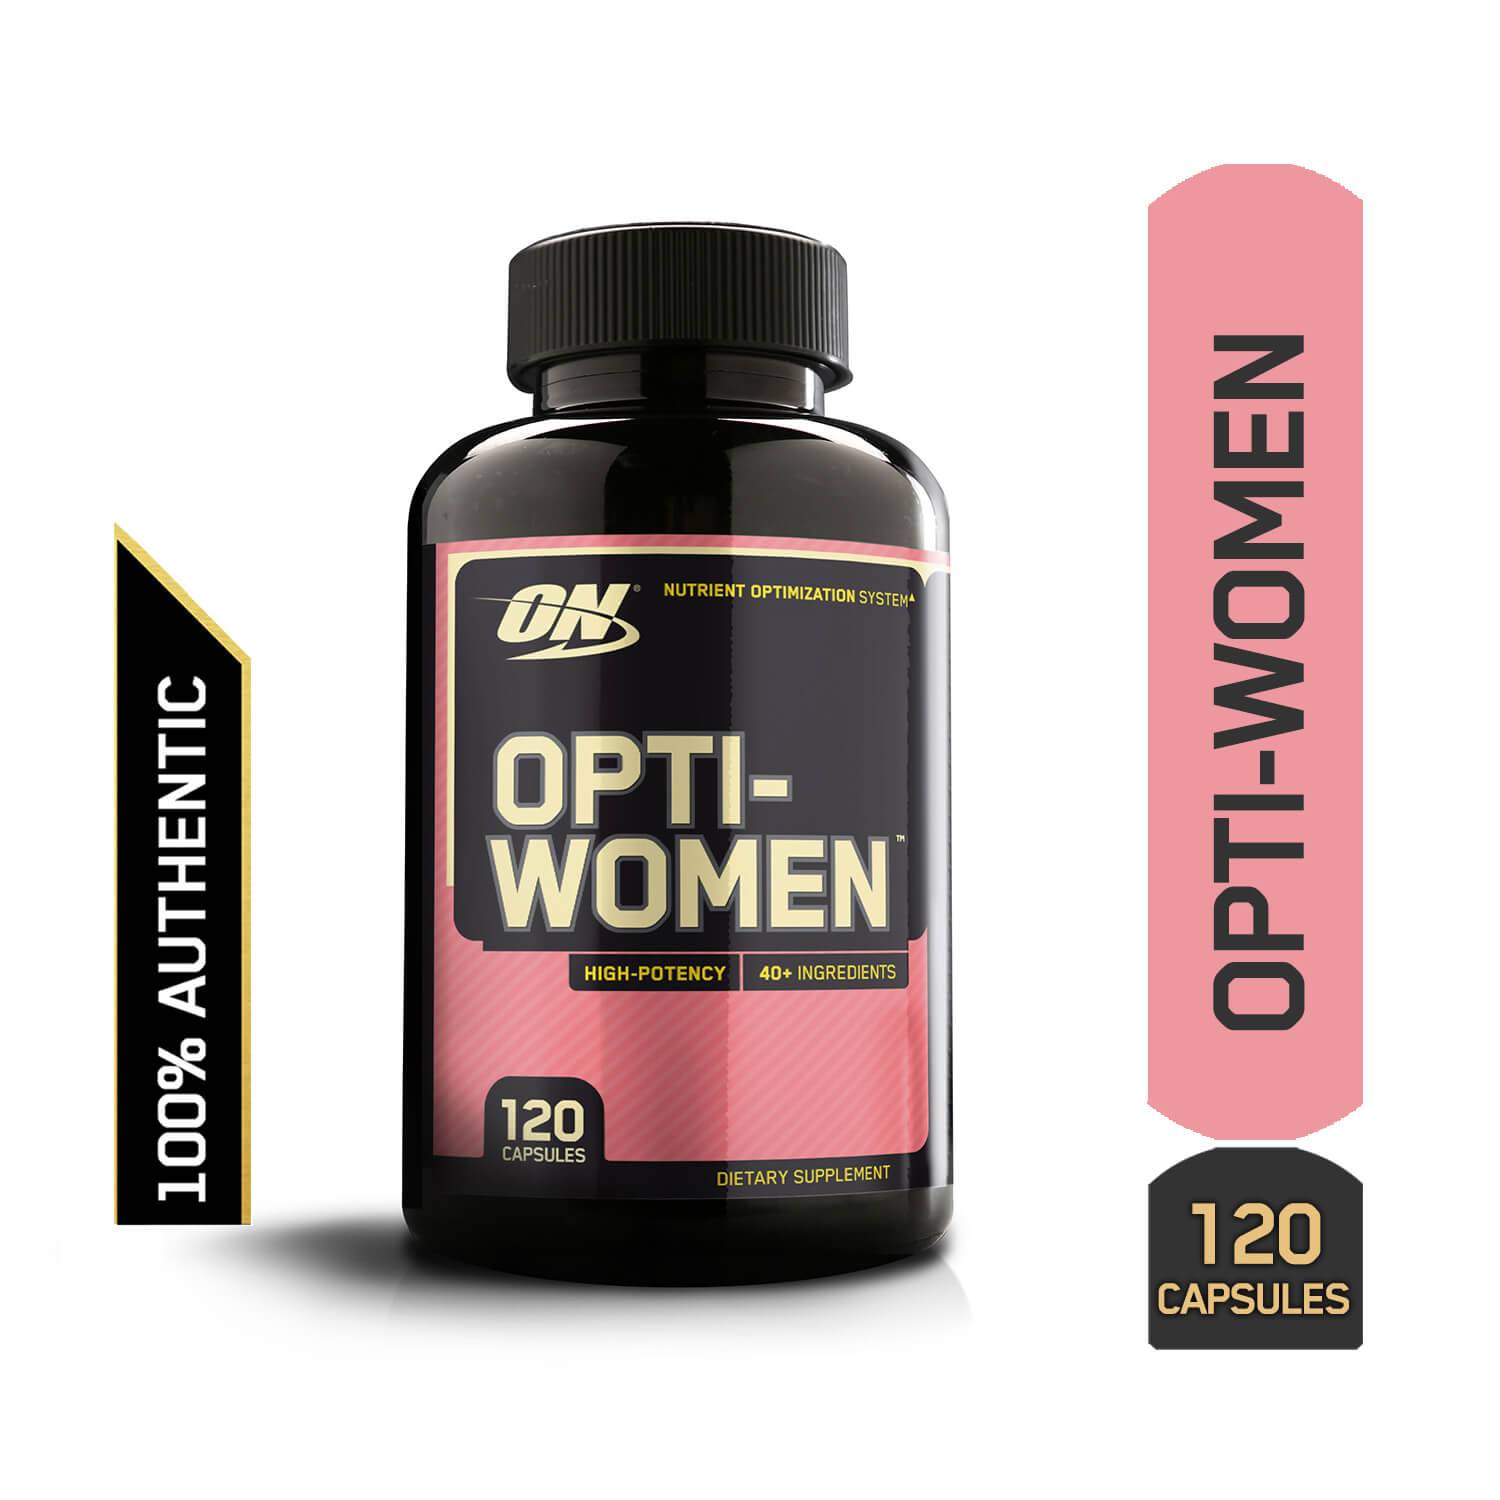 Витамины opti-women: инструкция по применению, состав